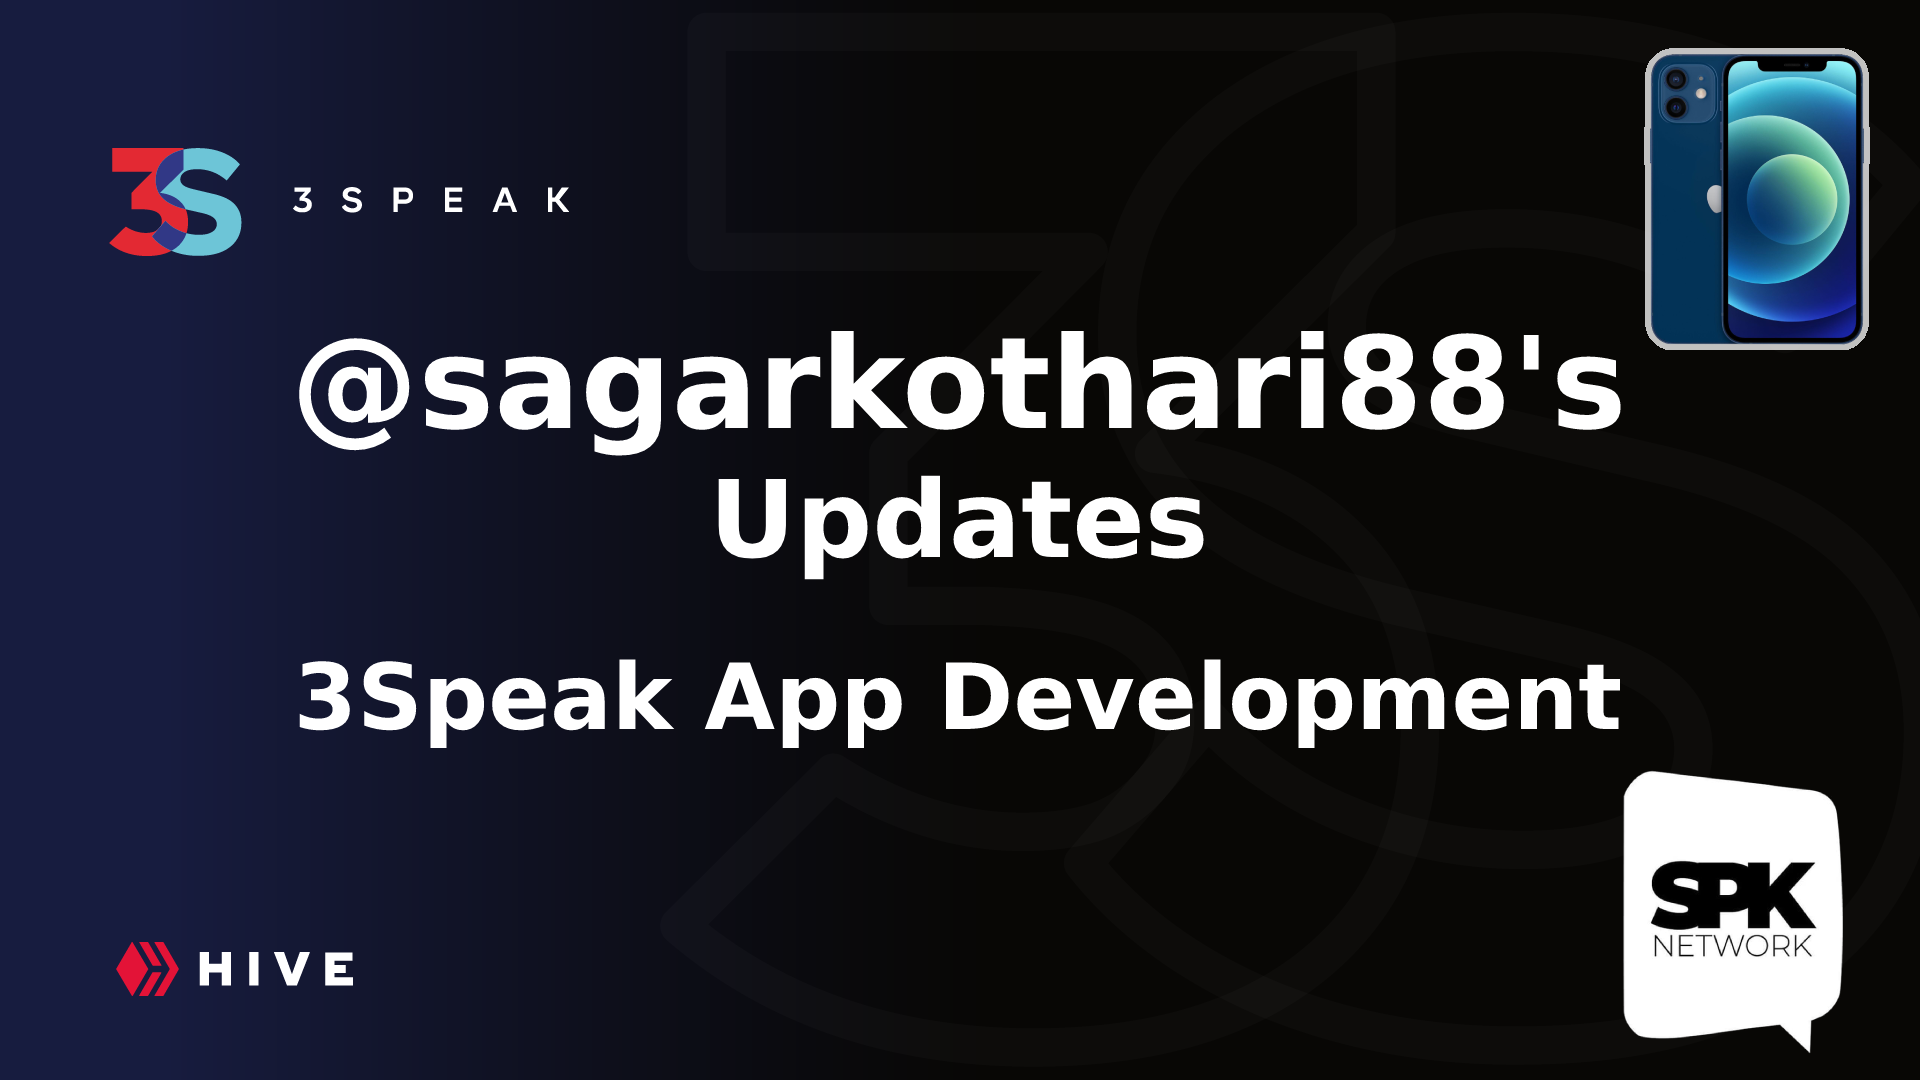 @threespeak/3speak-development-updates-sagarkothari88